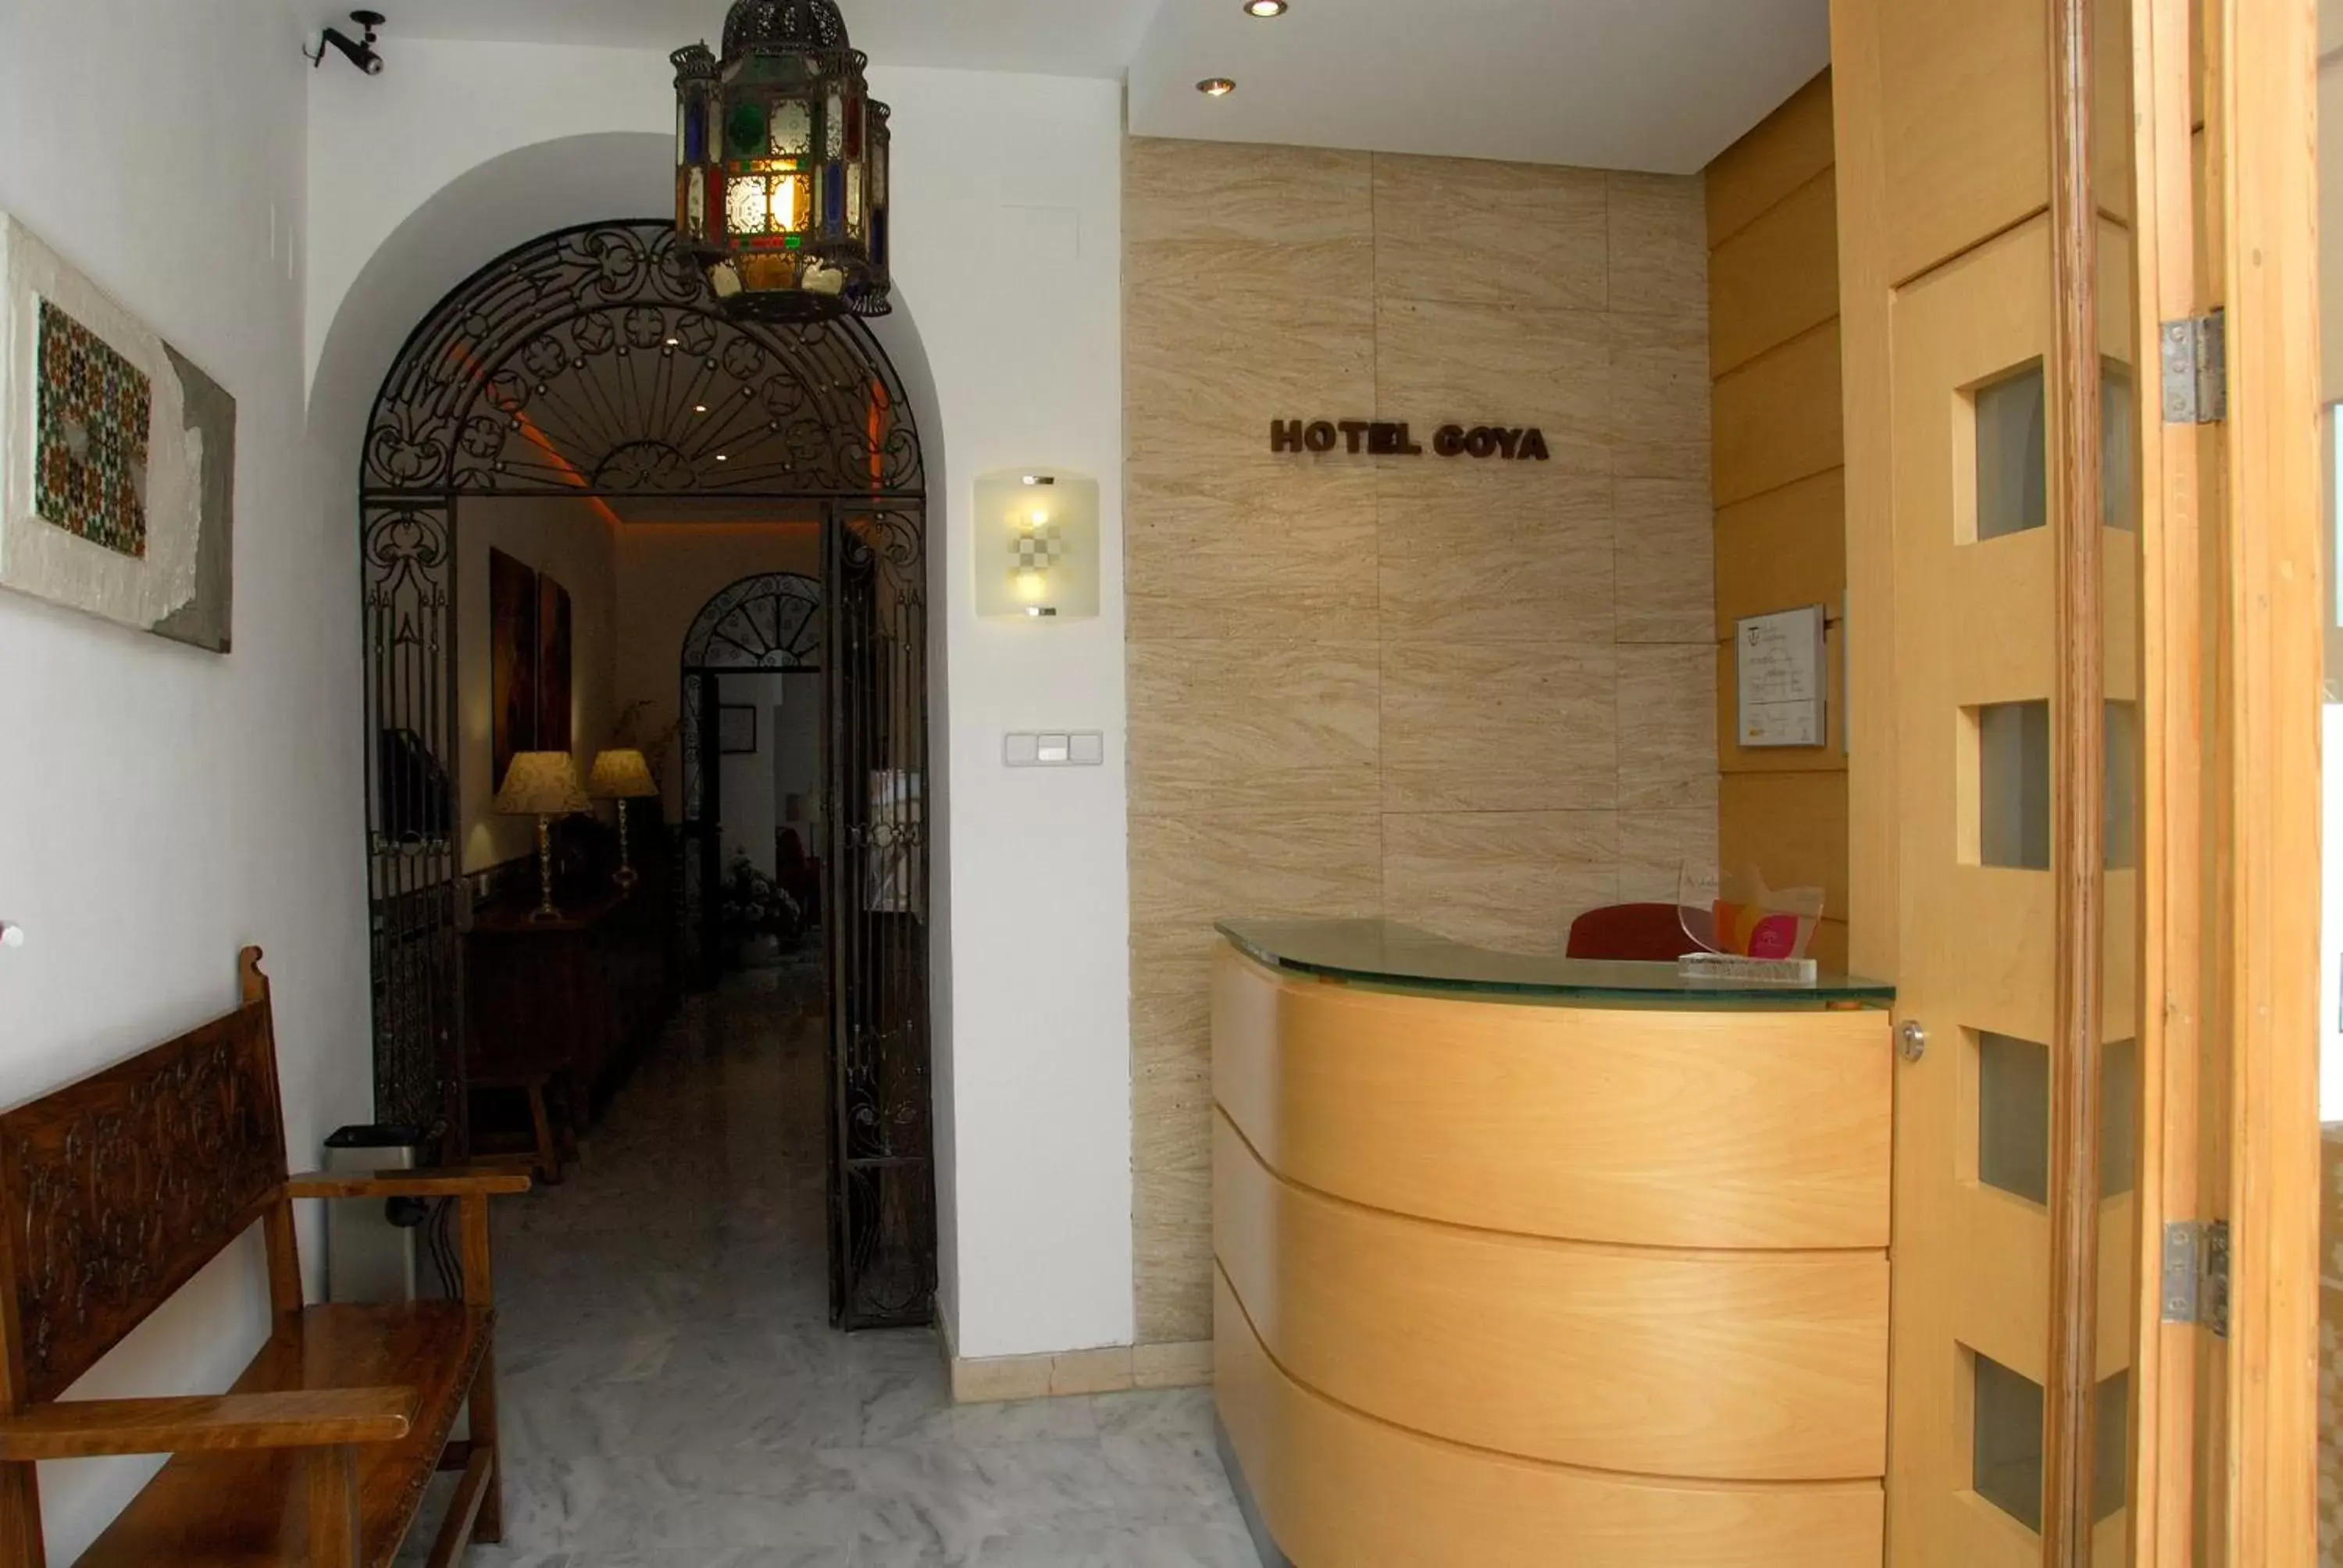 Lobby or reception, Lobby/Reception in Hotel Goya